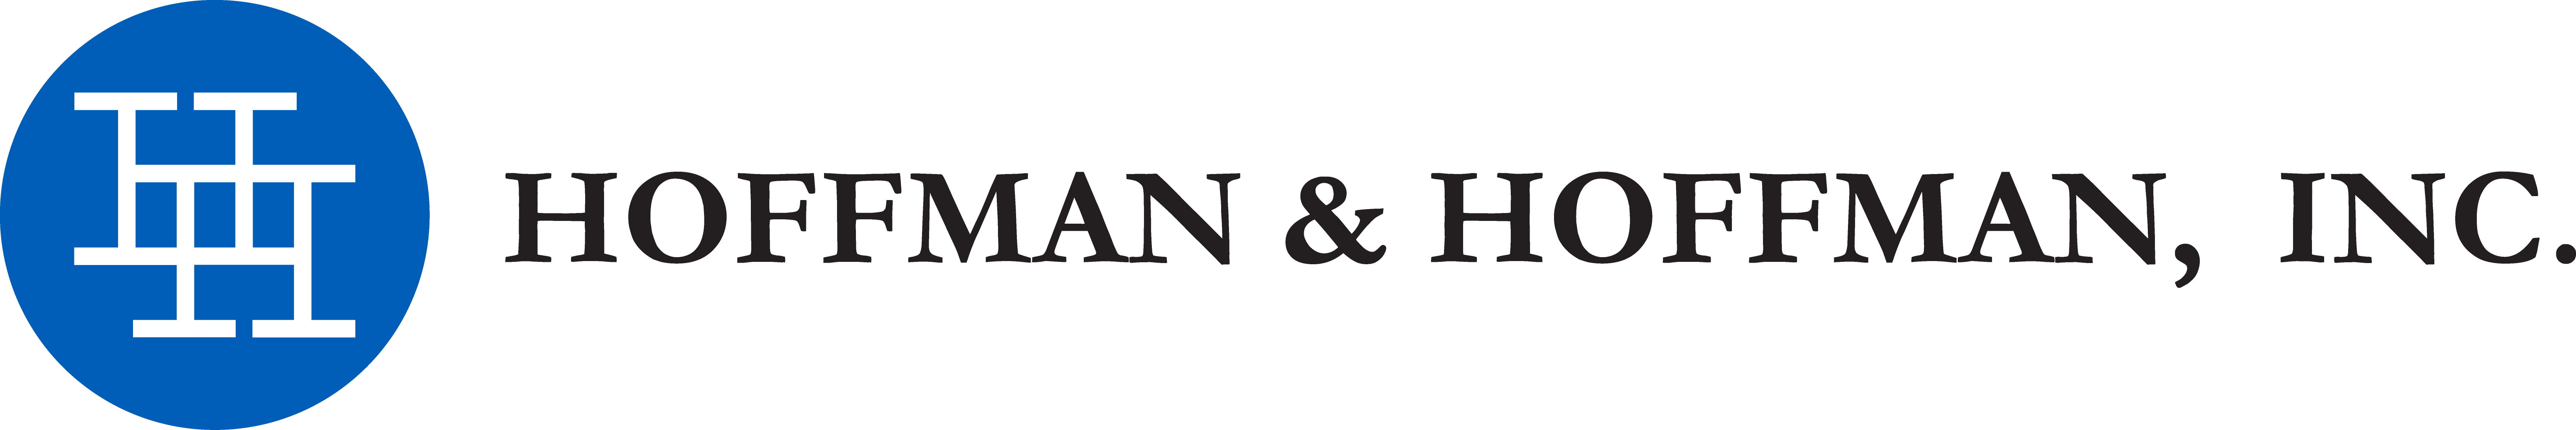 HH_Logo_RGB